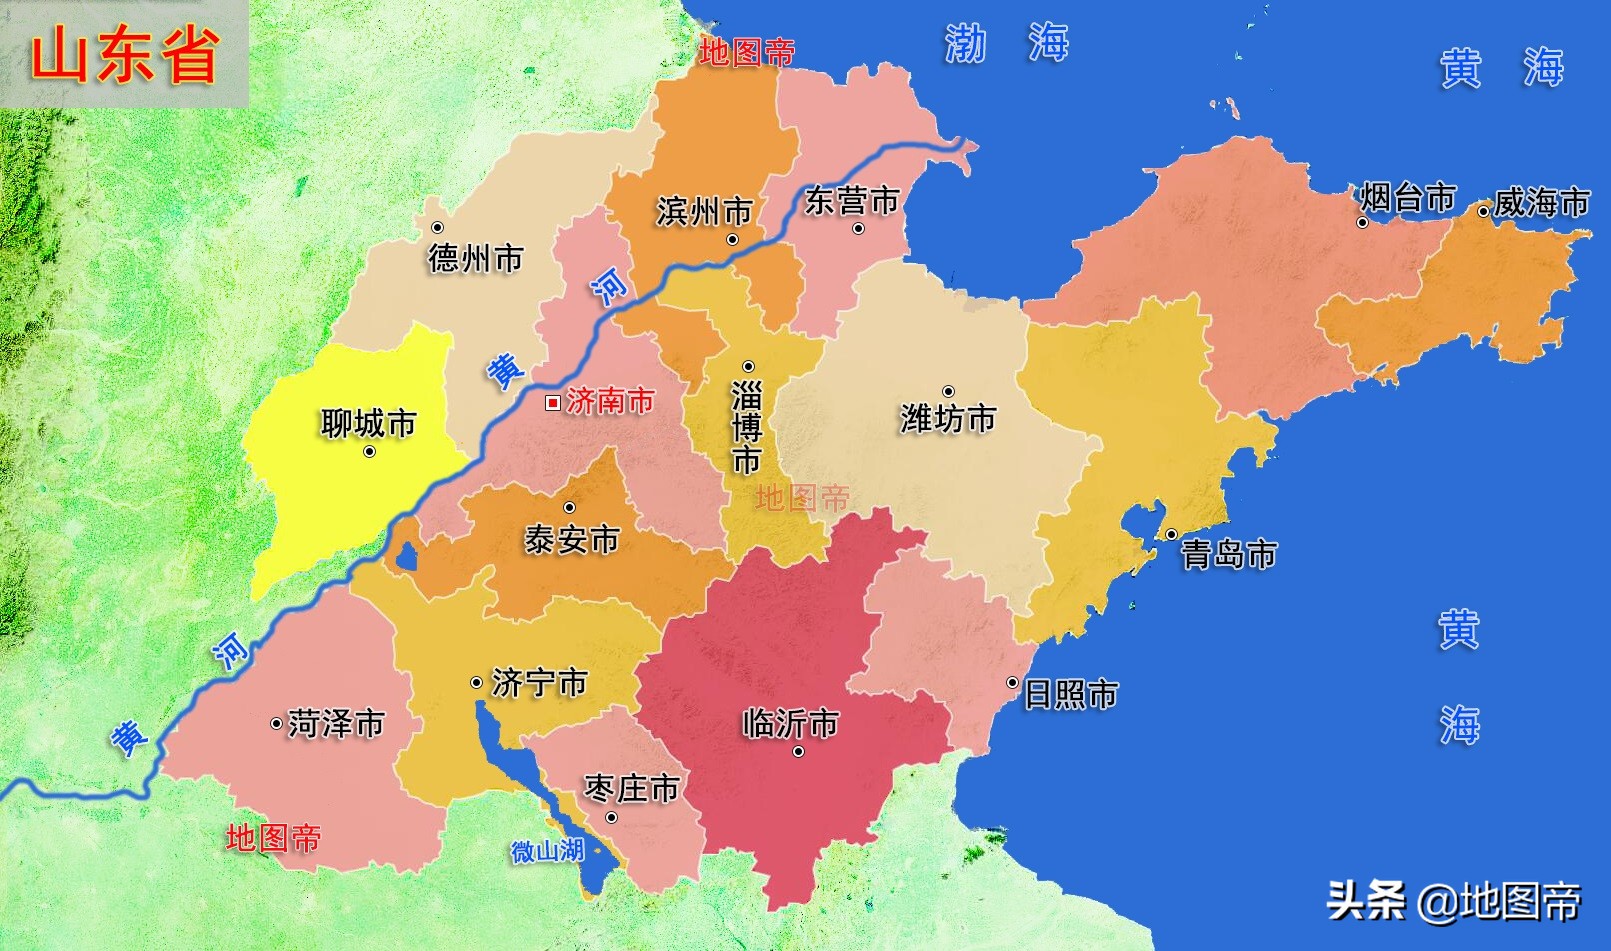 山东省7个沿海城市地势图:青岛,威海,烟台,潍坊,东营